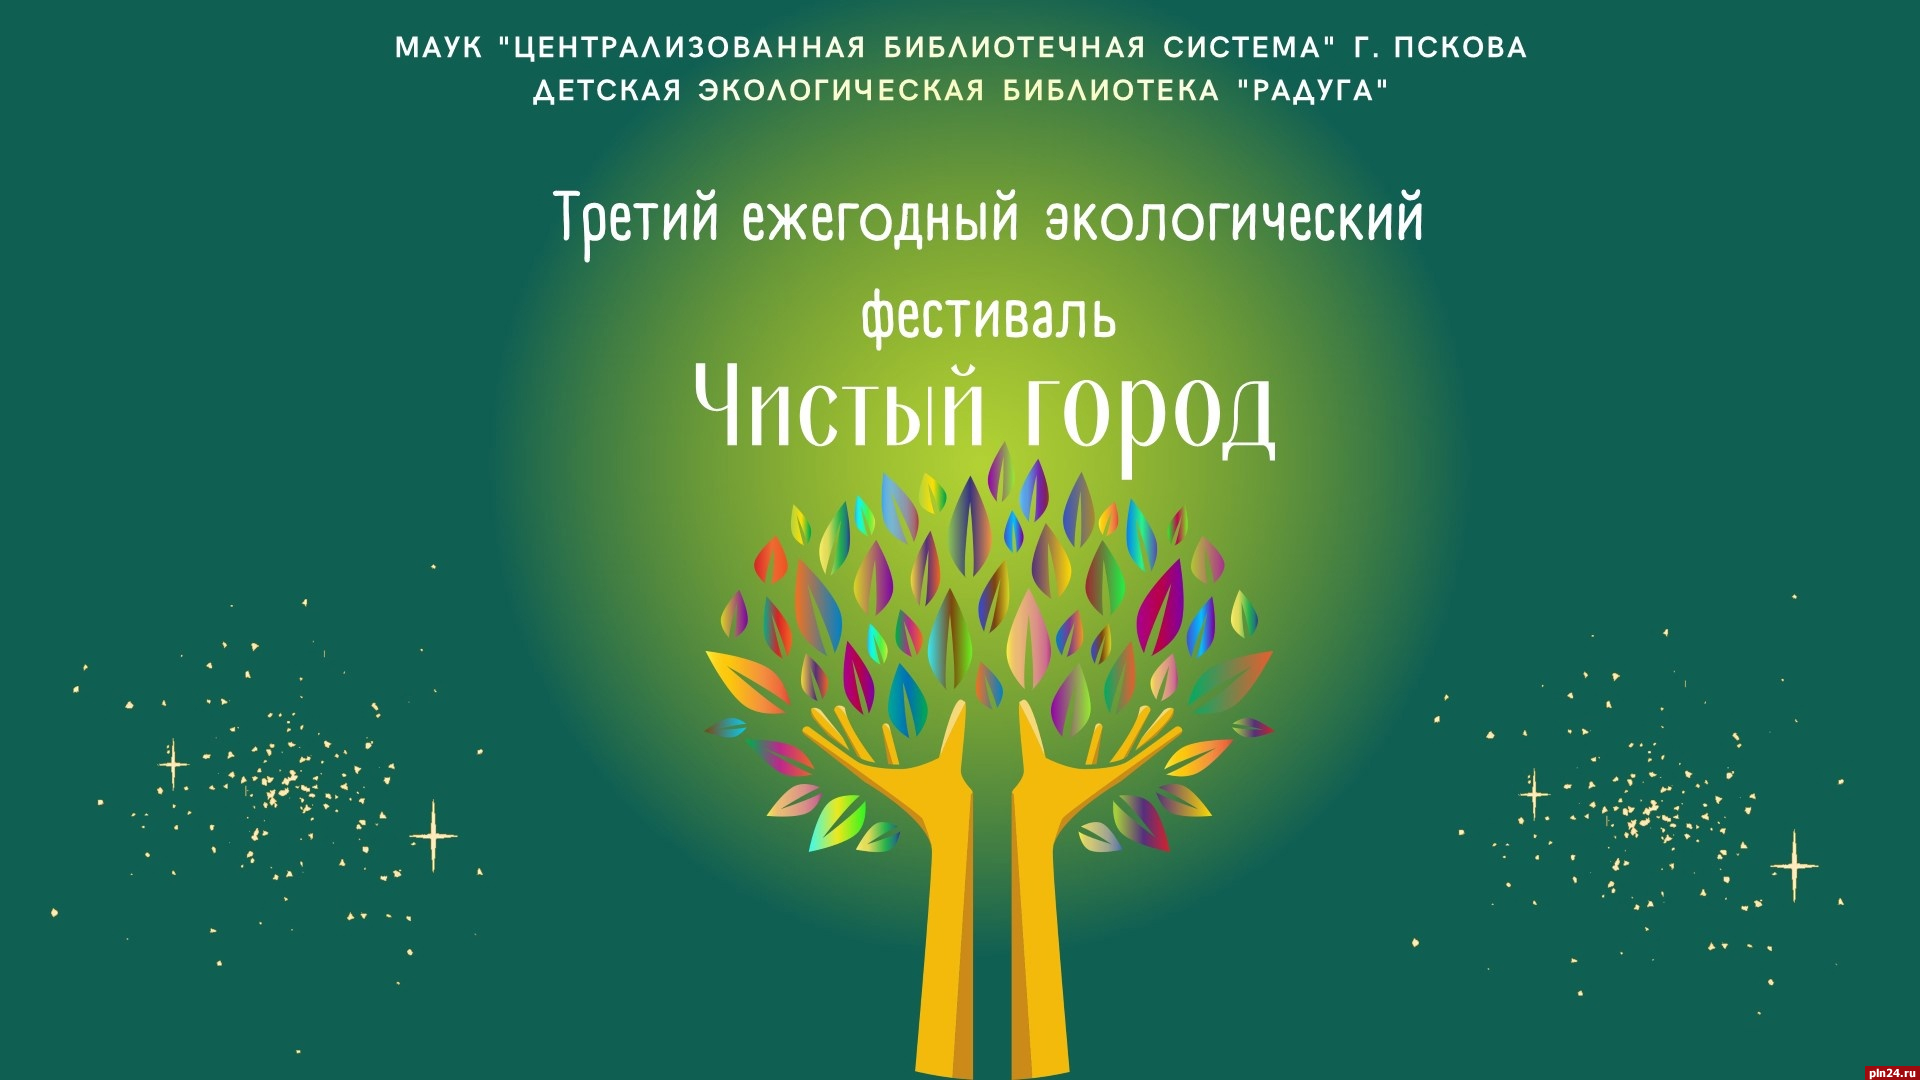 Экологический фестиваль «Чистый город» стартовал в Пскове